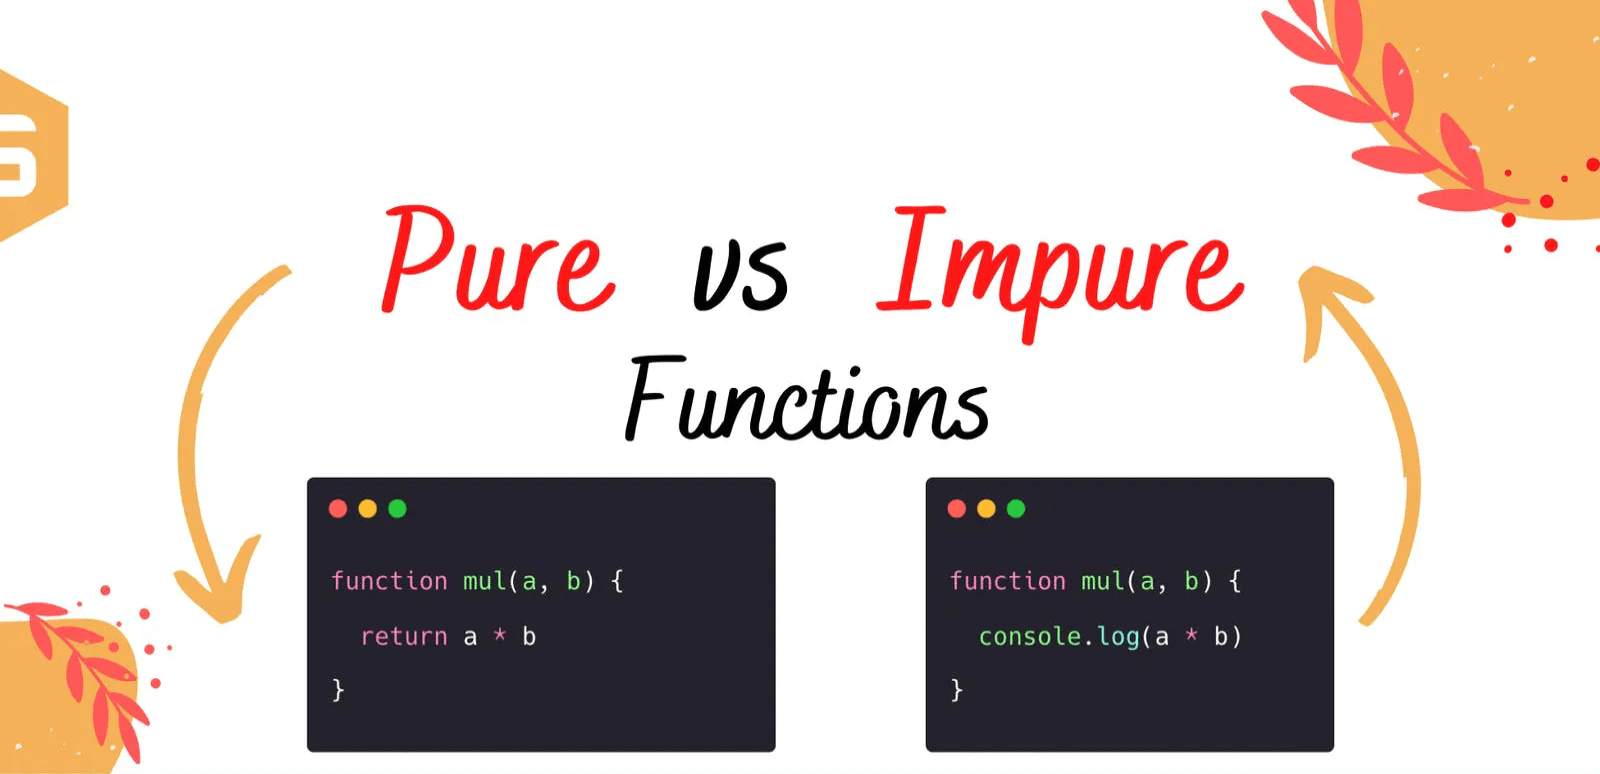 Ø´Ø±Ø­ Ø§Ù„Ù�Ø±Ù‚ Ø¨ÙŠÙ† Pure Functions Ùˆ Impure Functions